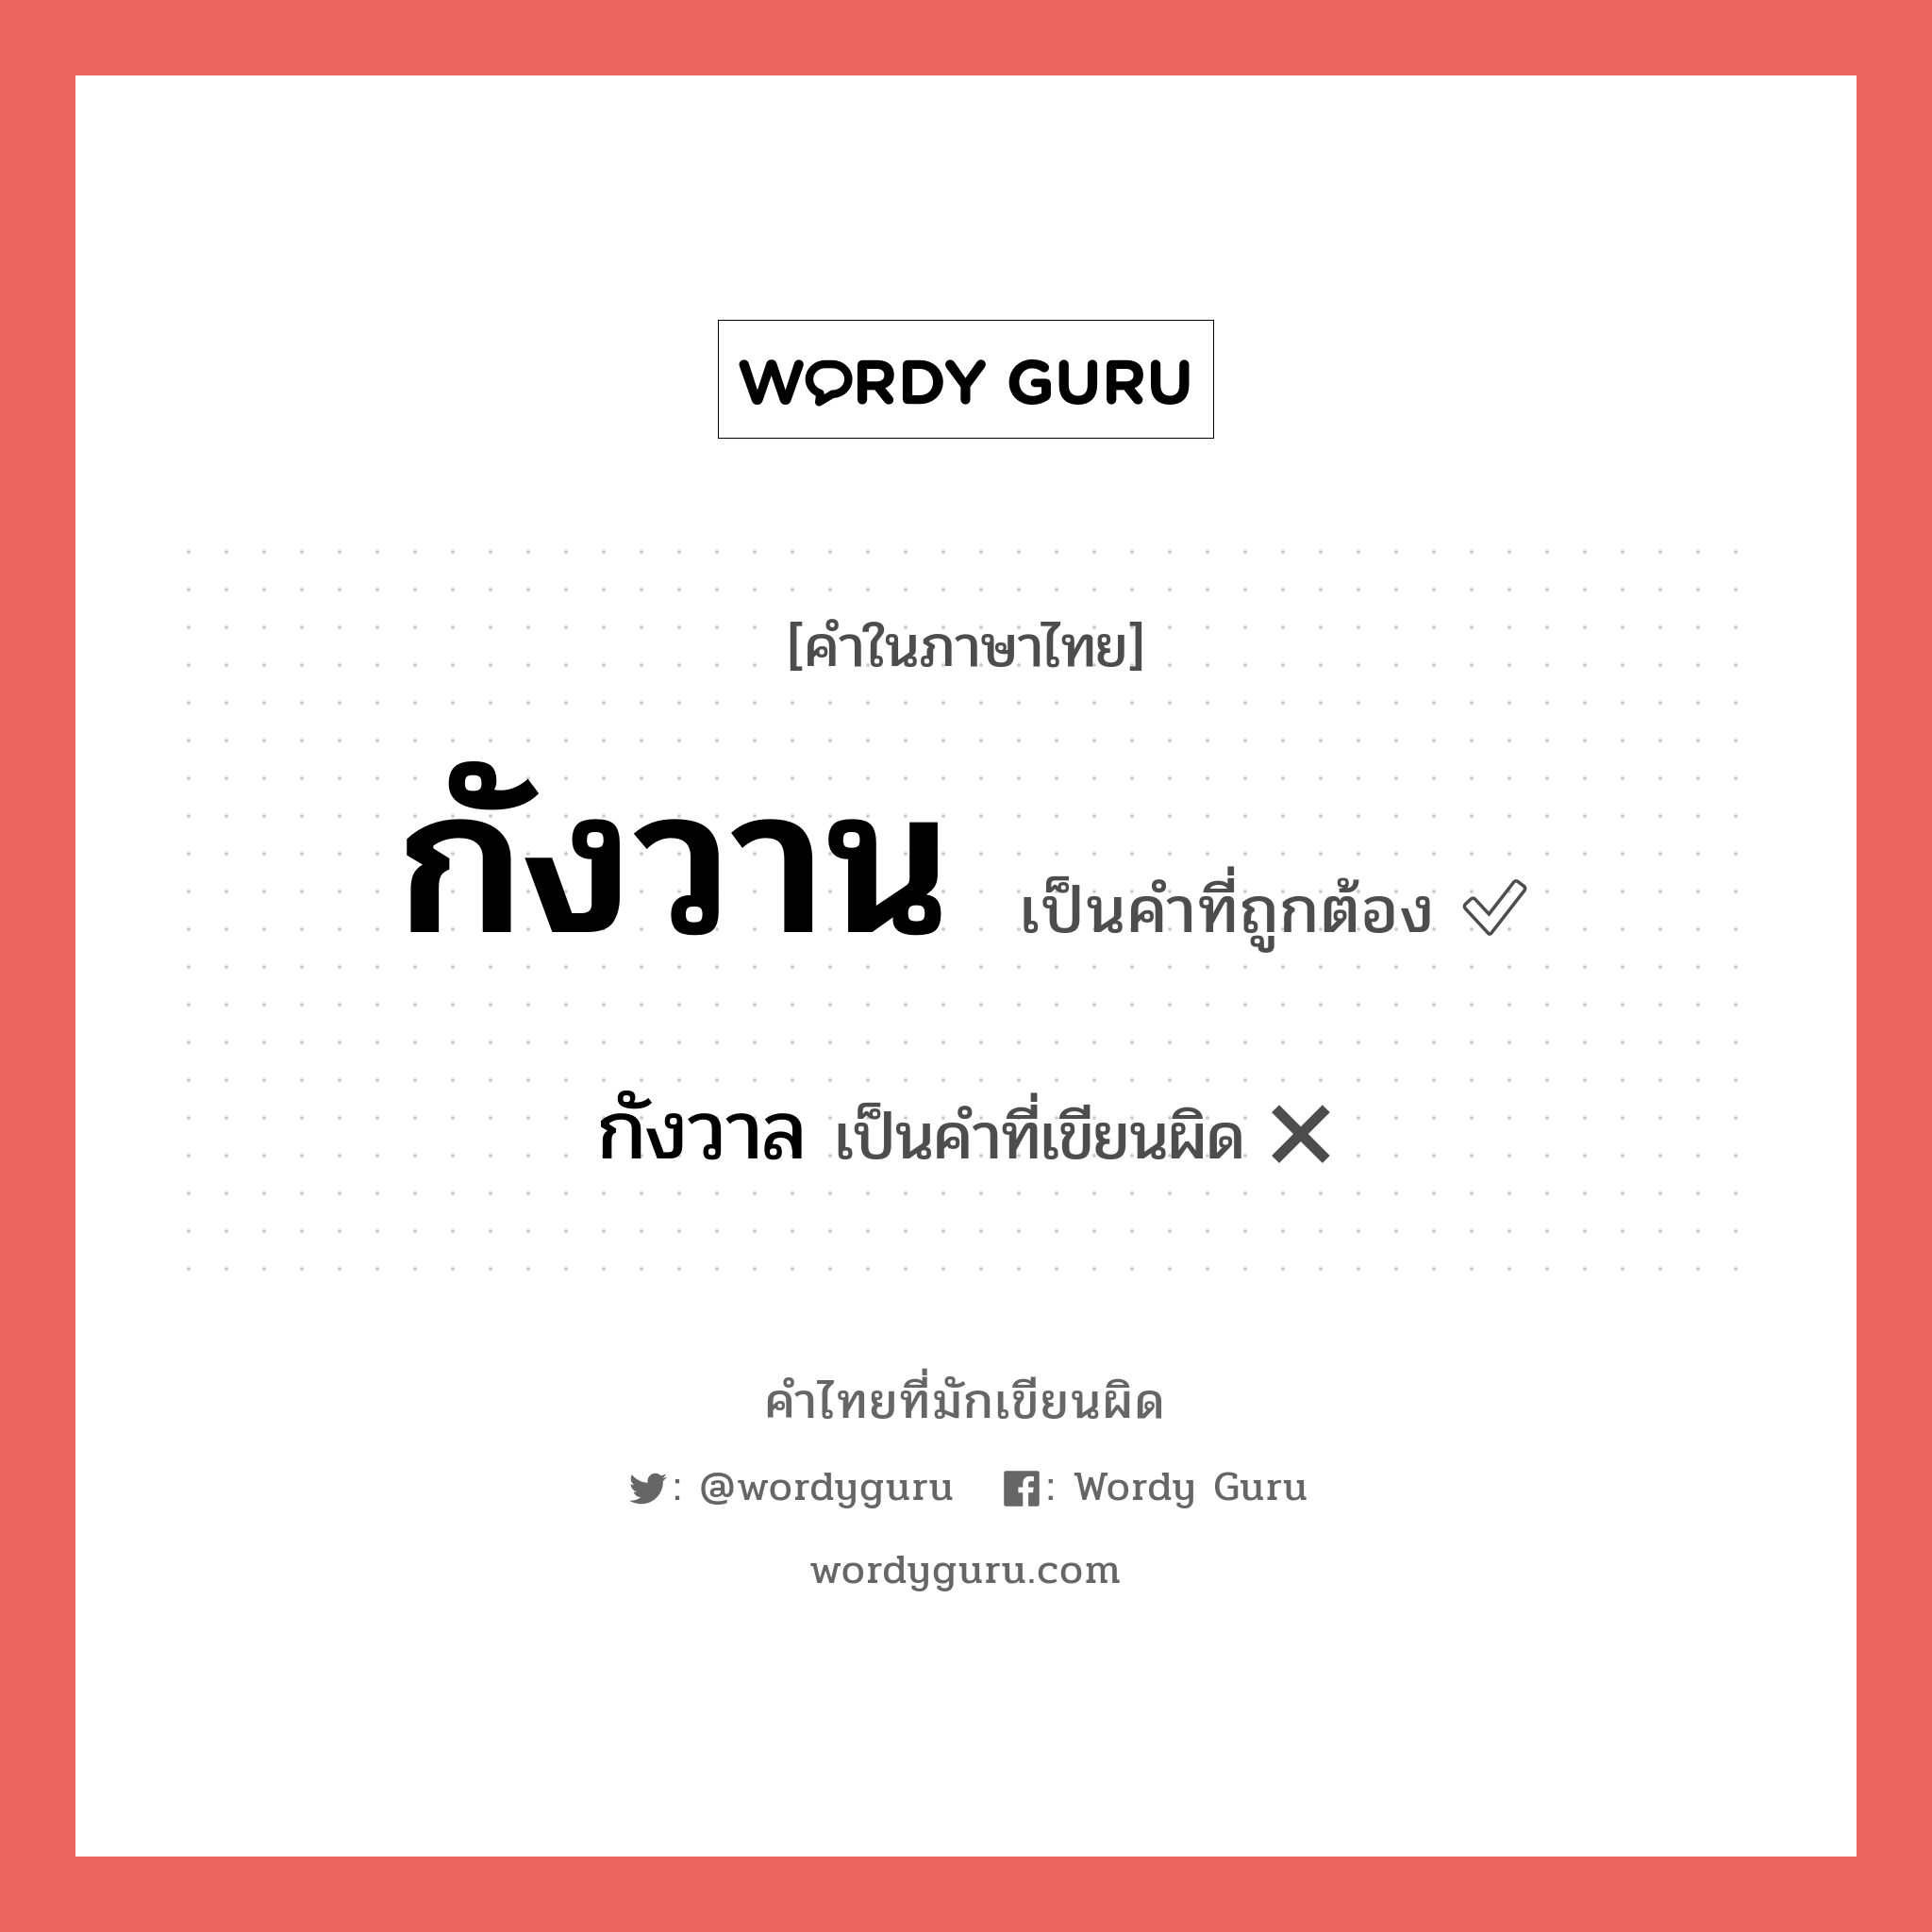 กังวาน หรือ กังวาล คำไหนเขียนถูก?, คำในภาษาไทยที่มักเขียนผิด กังวาน คำที่ผิด ❌ กังวาล